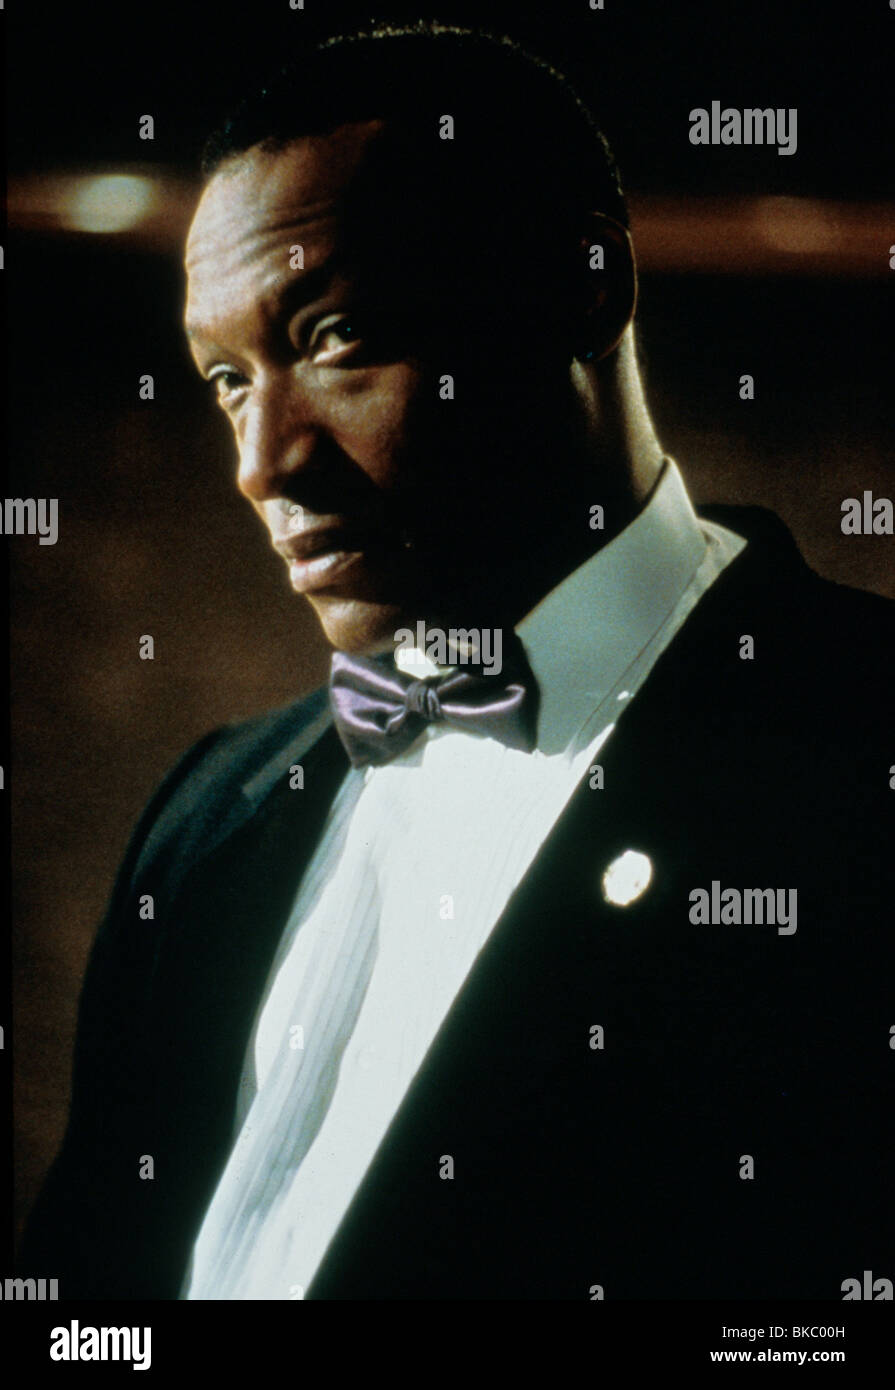 WISHMASTER -1998 TONY TODD Stock Photo - Alamy